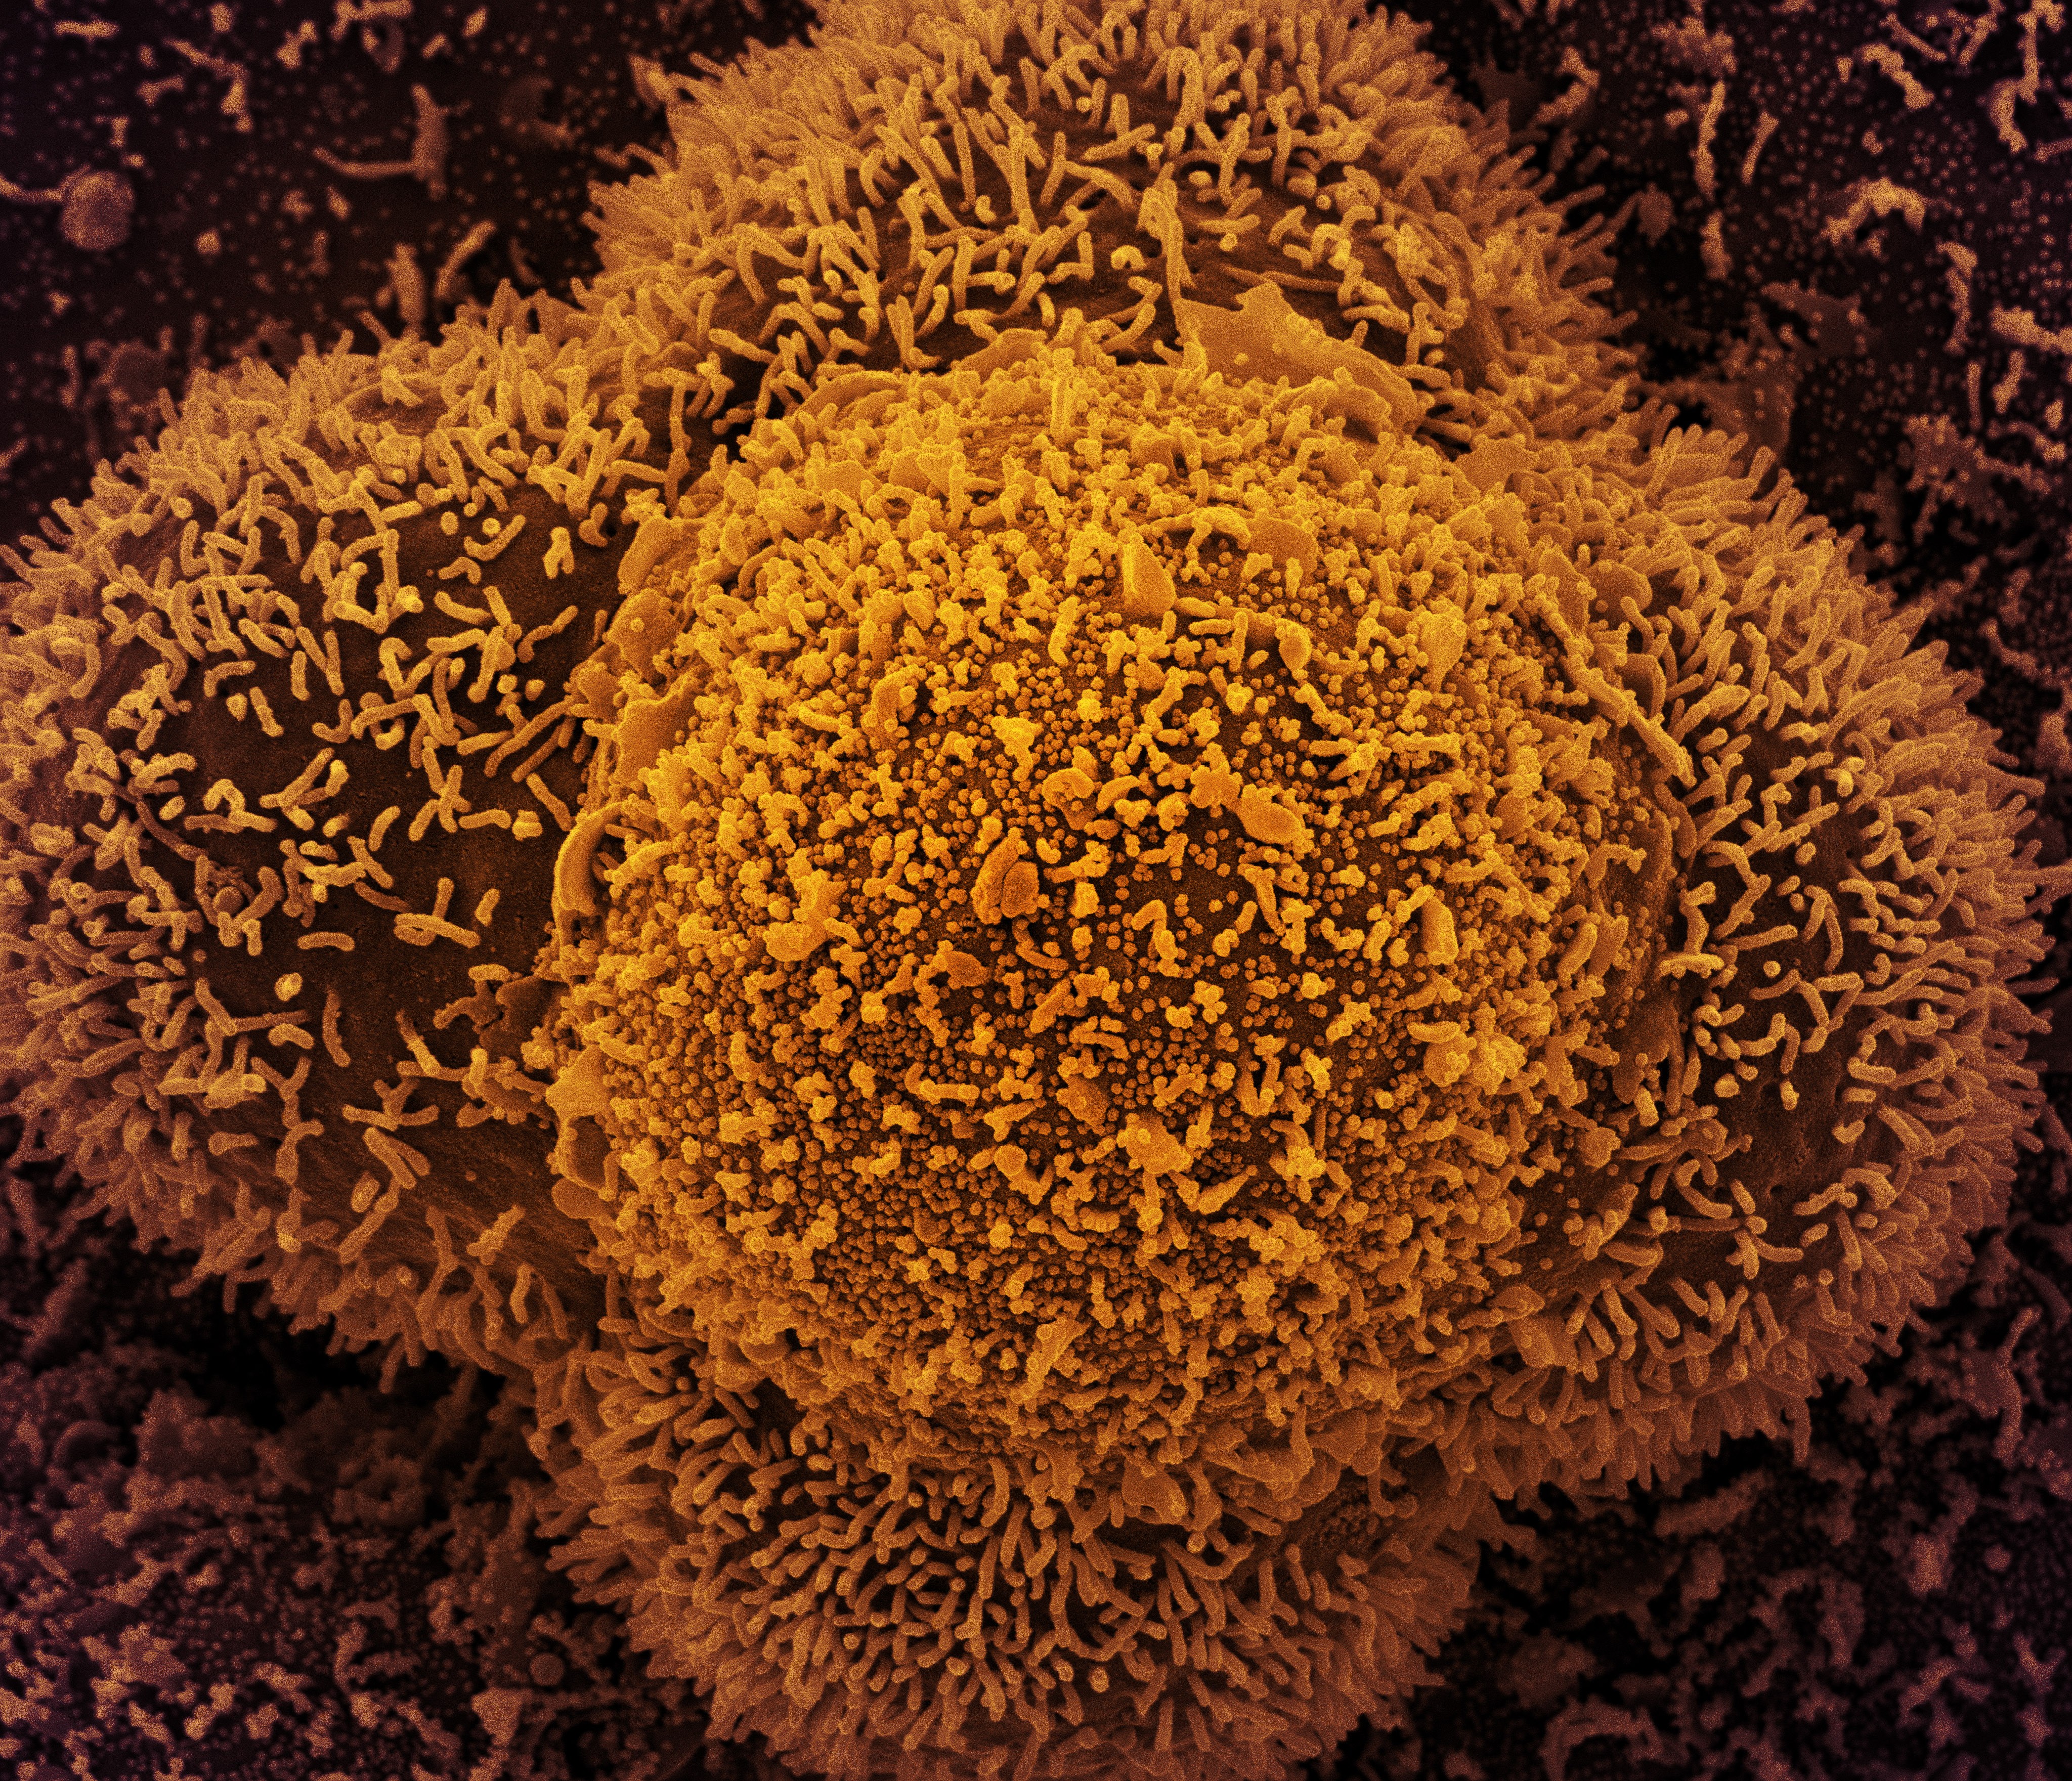 Células CCL-81 fortemente infectadas com partículas do vírus Sars-CoV-2, o vírus causador da Covid-19. As pequenas estruturas esféricas no centro da imagem são partículas do novo coronavírus, enquanto as protrusões semelhantes a fios que se estendem das células são projeções celulares ou pseudópodes.  (Foto: Centro de Pesquisa Integrada (IRF) do NIAID )